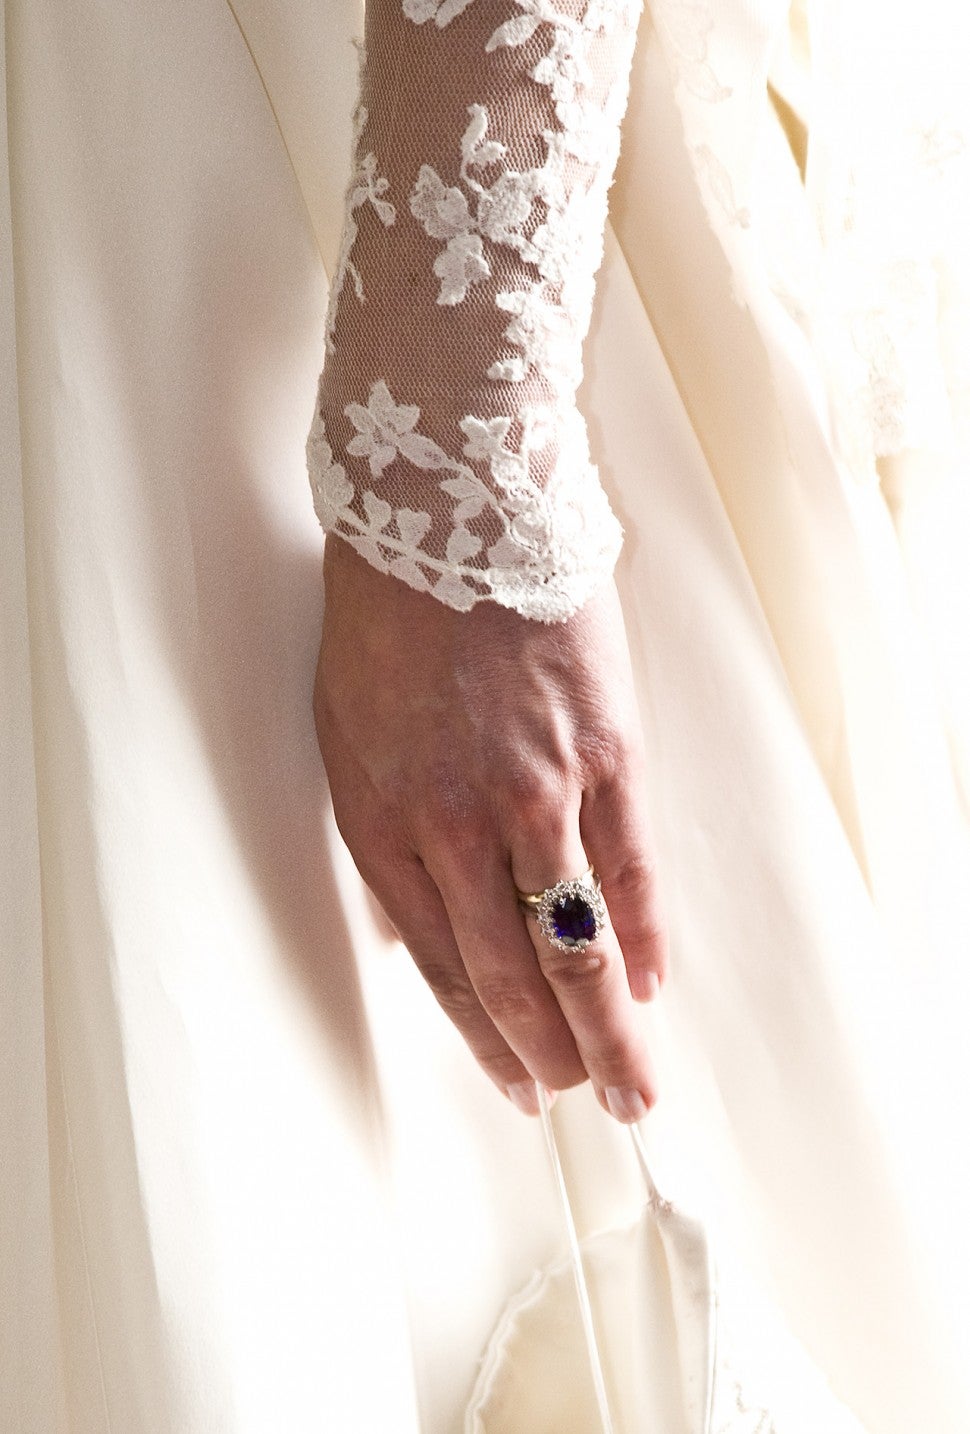 Kate Middleton's wedding ring